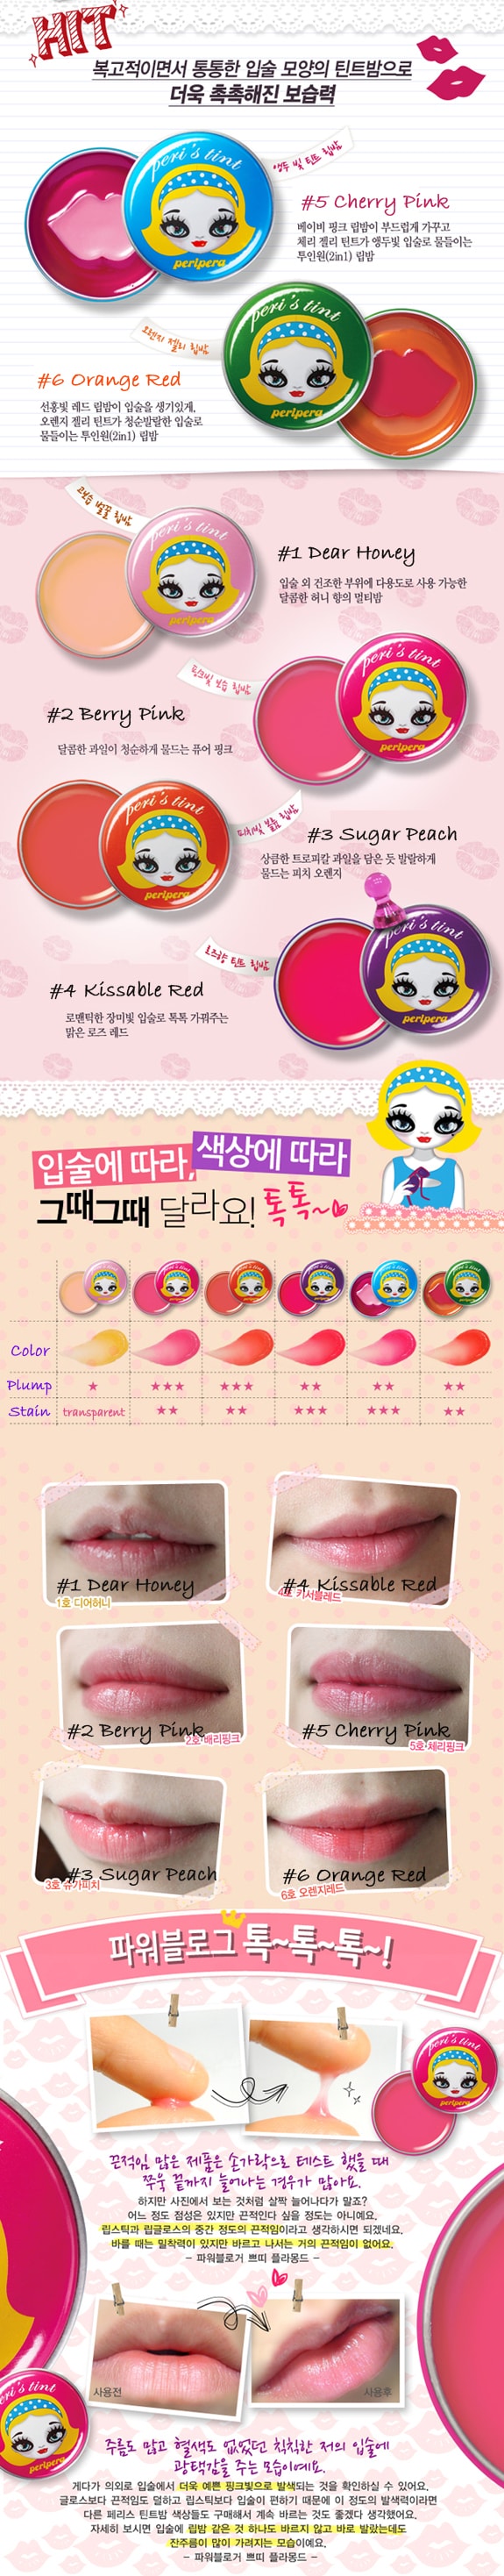 韓國 PERIPERA Peri's tint 潤唇膏 #02 Berry Pink 1pc